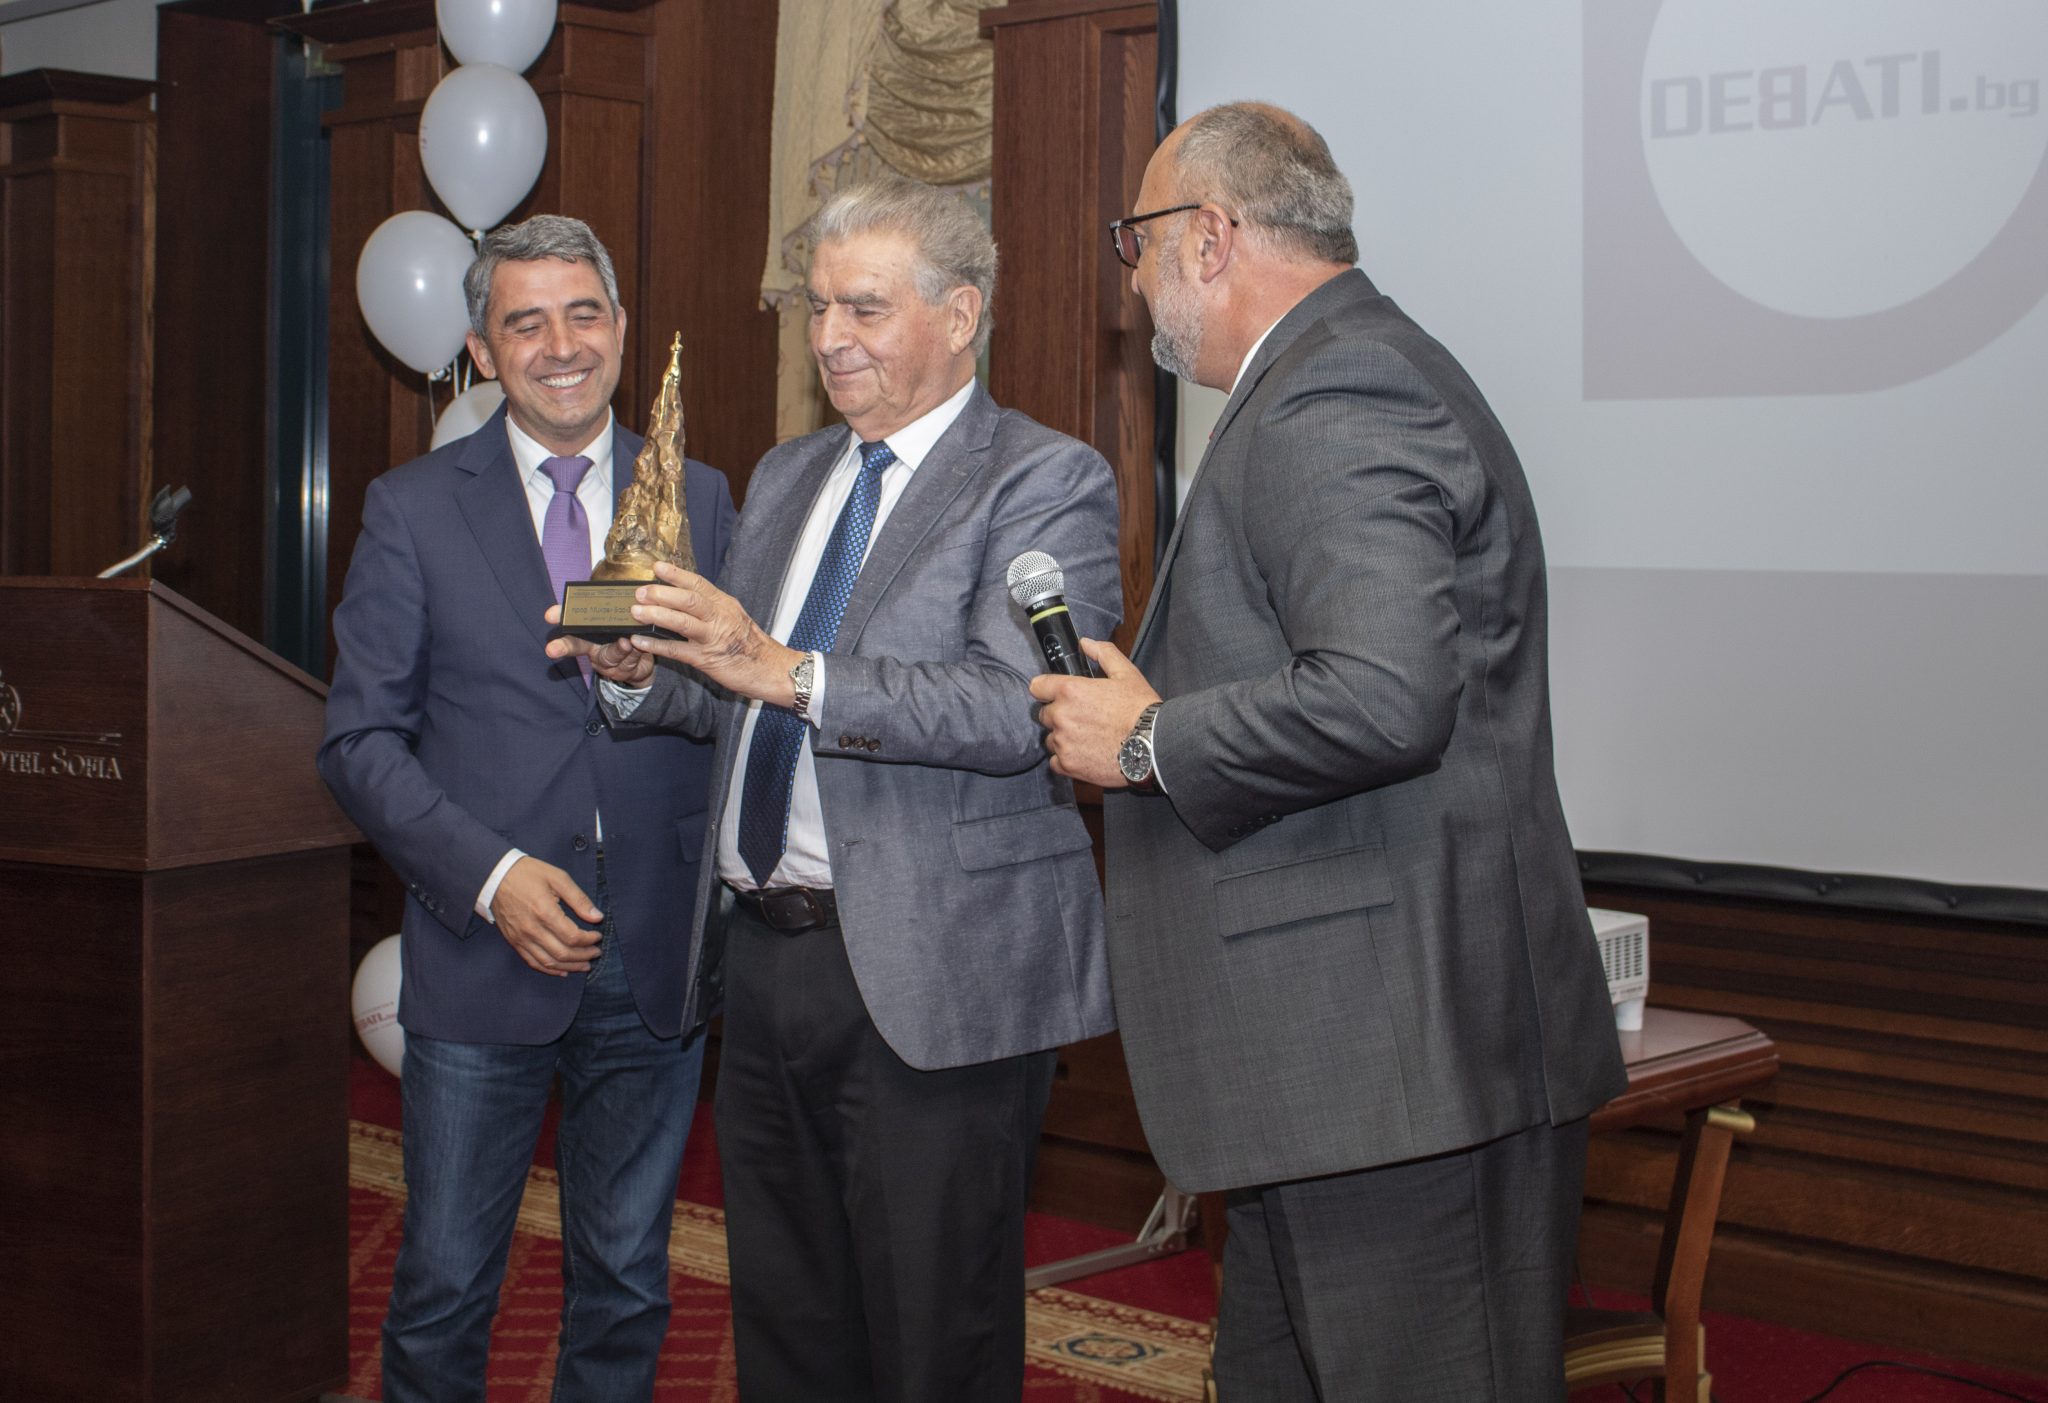 Президентът Росен Плевнелиев и издателят на ДЕБАТИ.БГ връчиха наградата за пробългарска политика на проф. Бар-Зоар